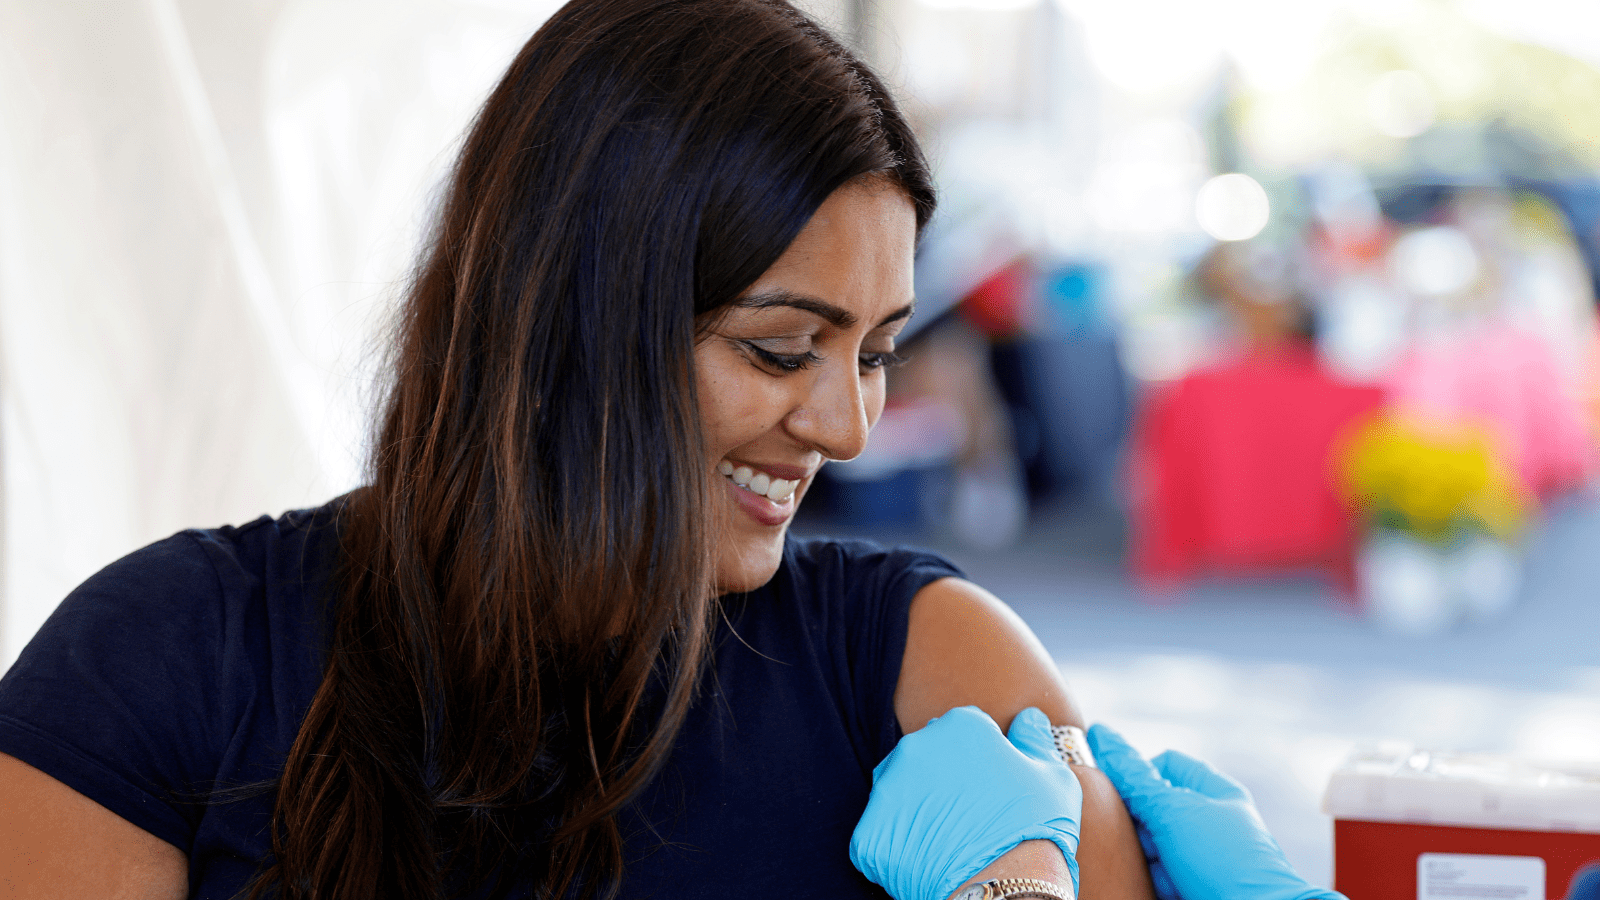 Radha Kadiwar receives a flu shot